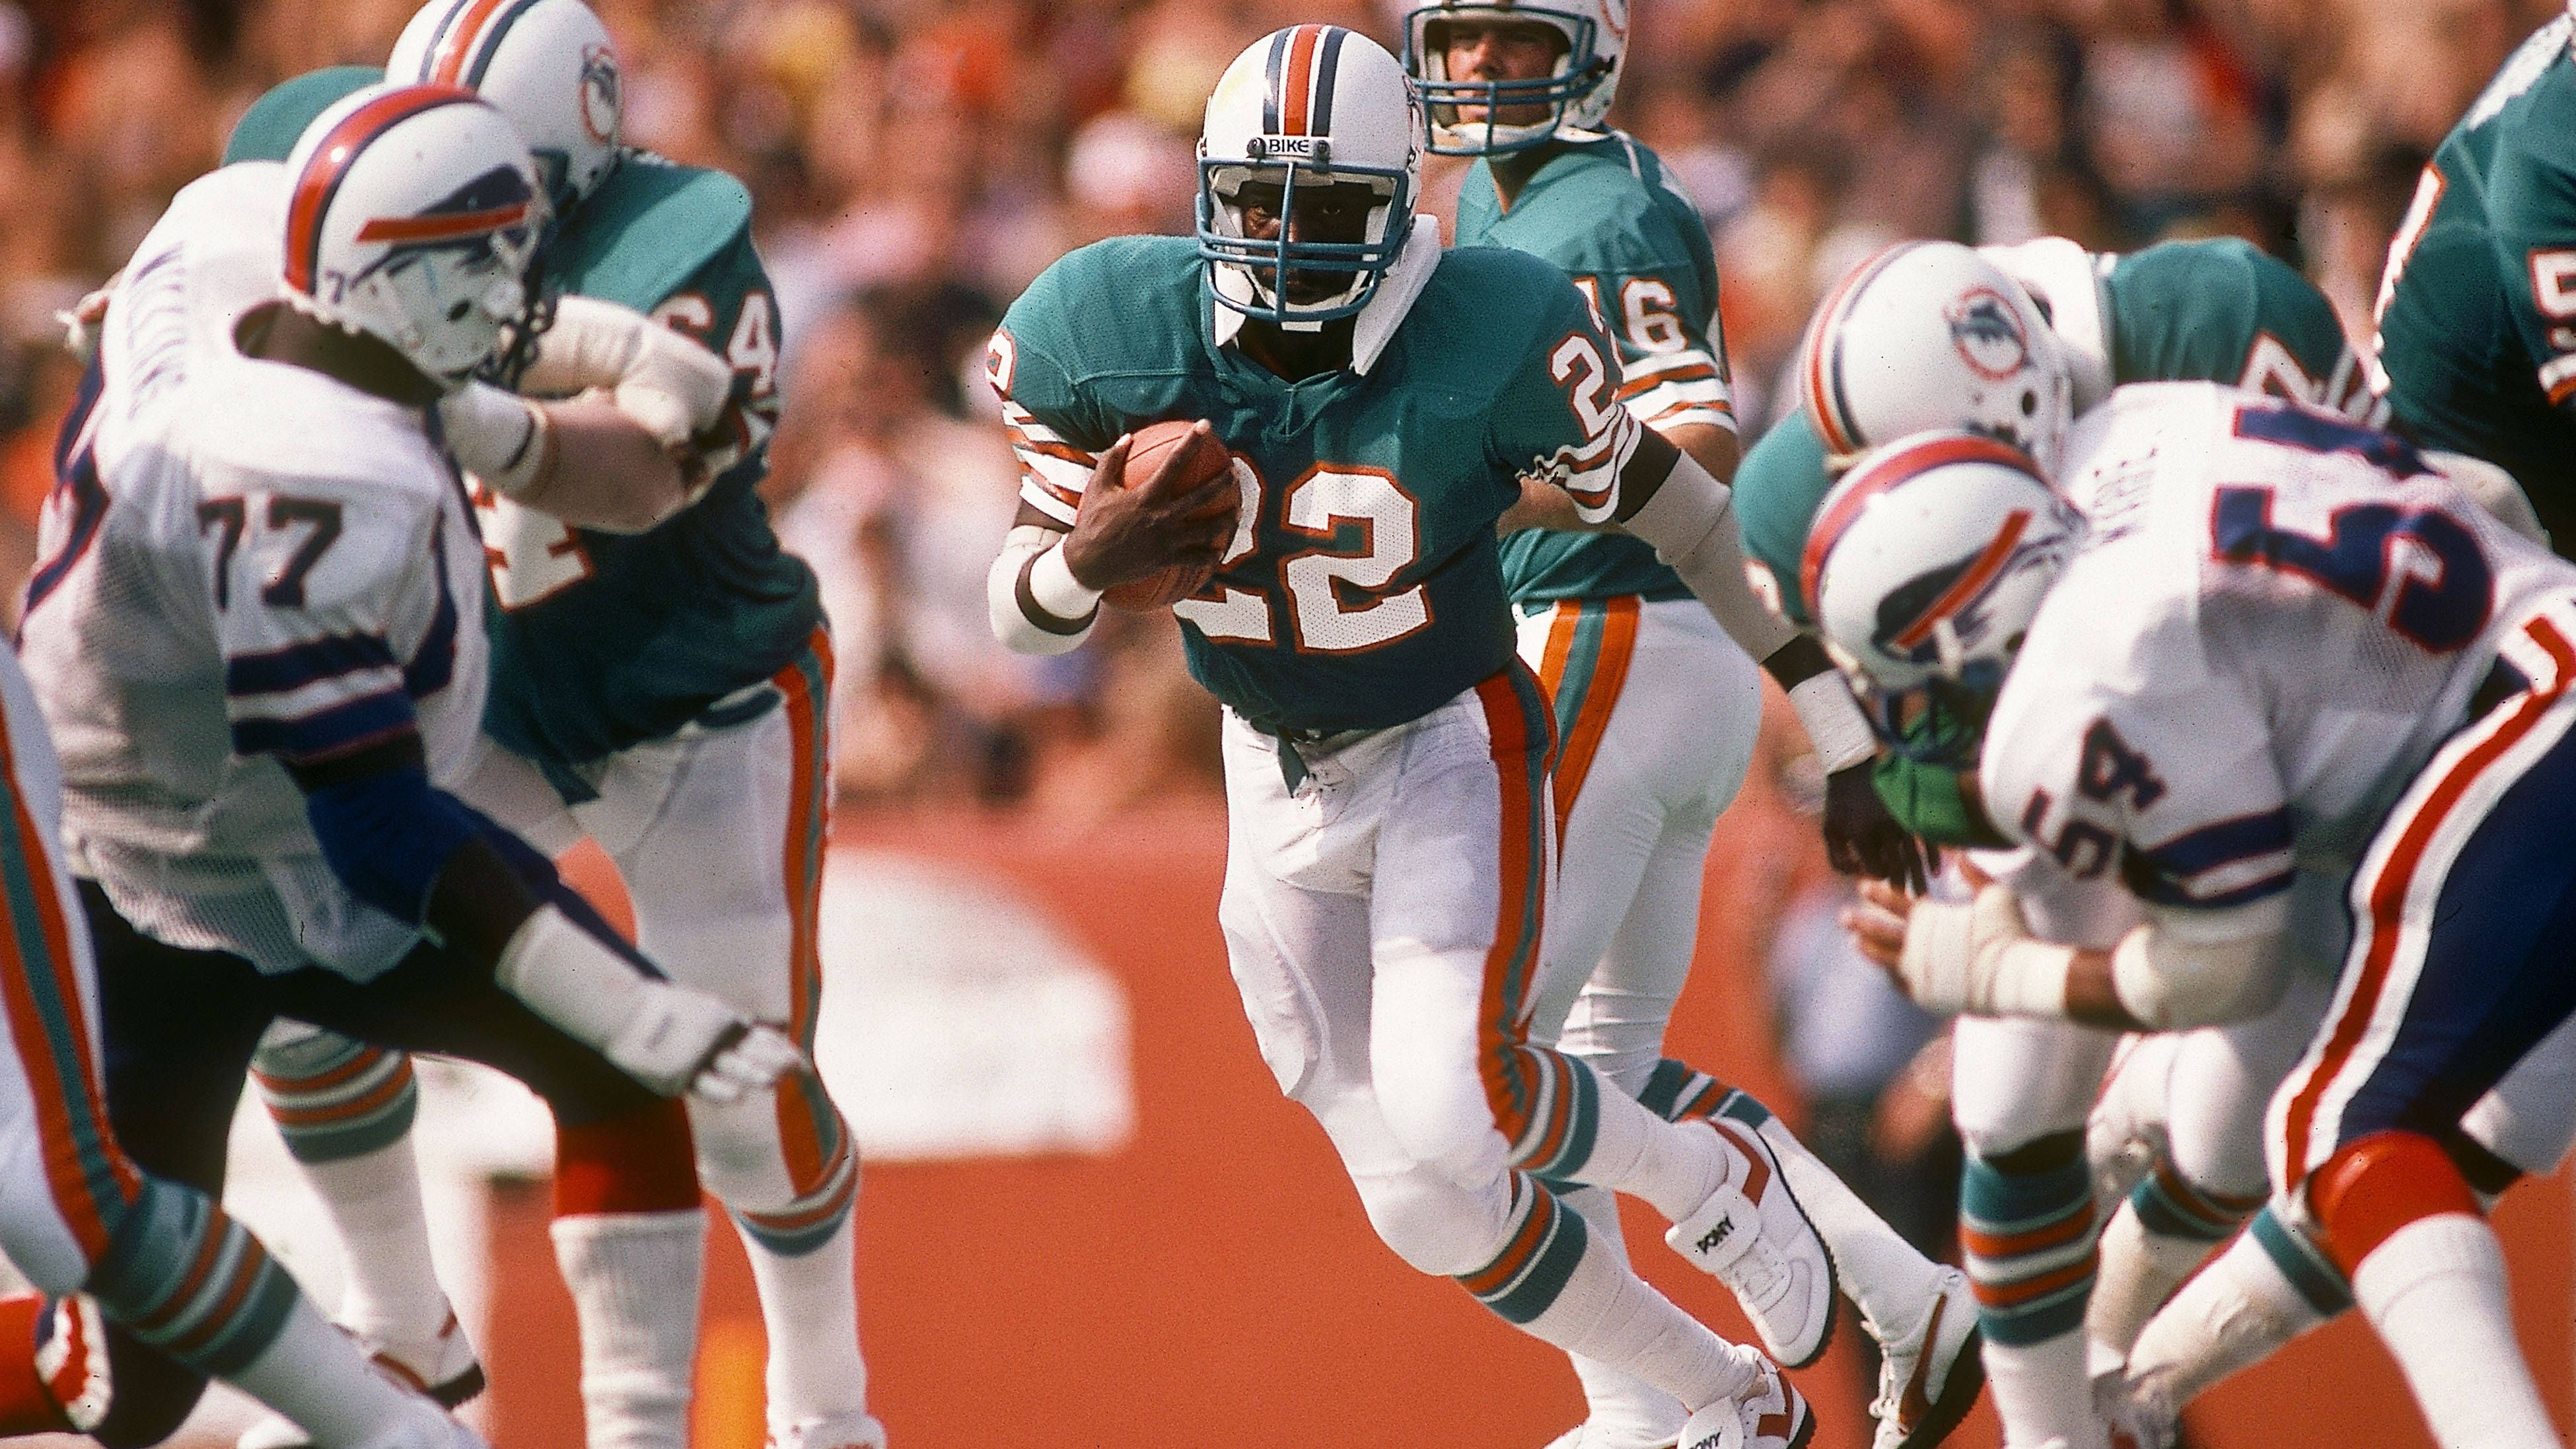 <strong>Woodlawn - the true story - Liebet eure Feinde (2015)</strong><br>Dort sieht sich Nathan jedoch weiter rassistischen Anfeindungen ausgesetzt - bis Schul-Kaplan Hank die verfeindeten Lager durch Nächstenliebe vereint. Später schafft es Nathan in die NFL, spielte von 1979 bis 1987 als Running Back bei den Miami Dolphins.